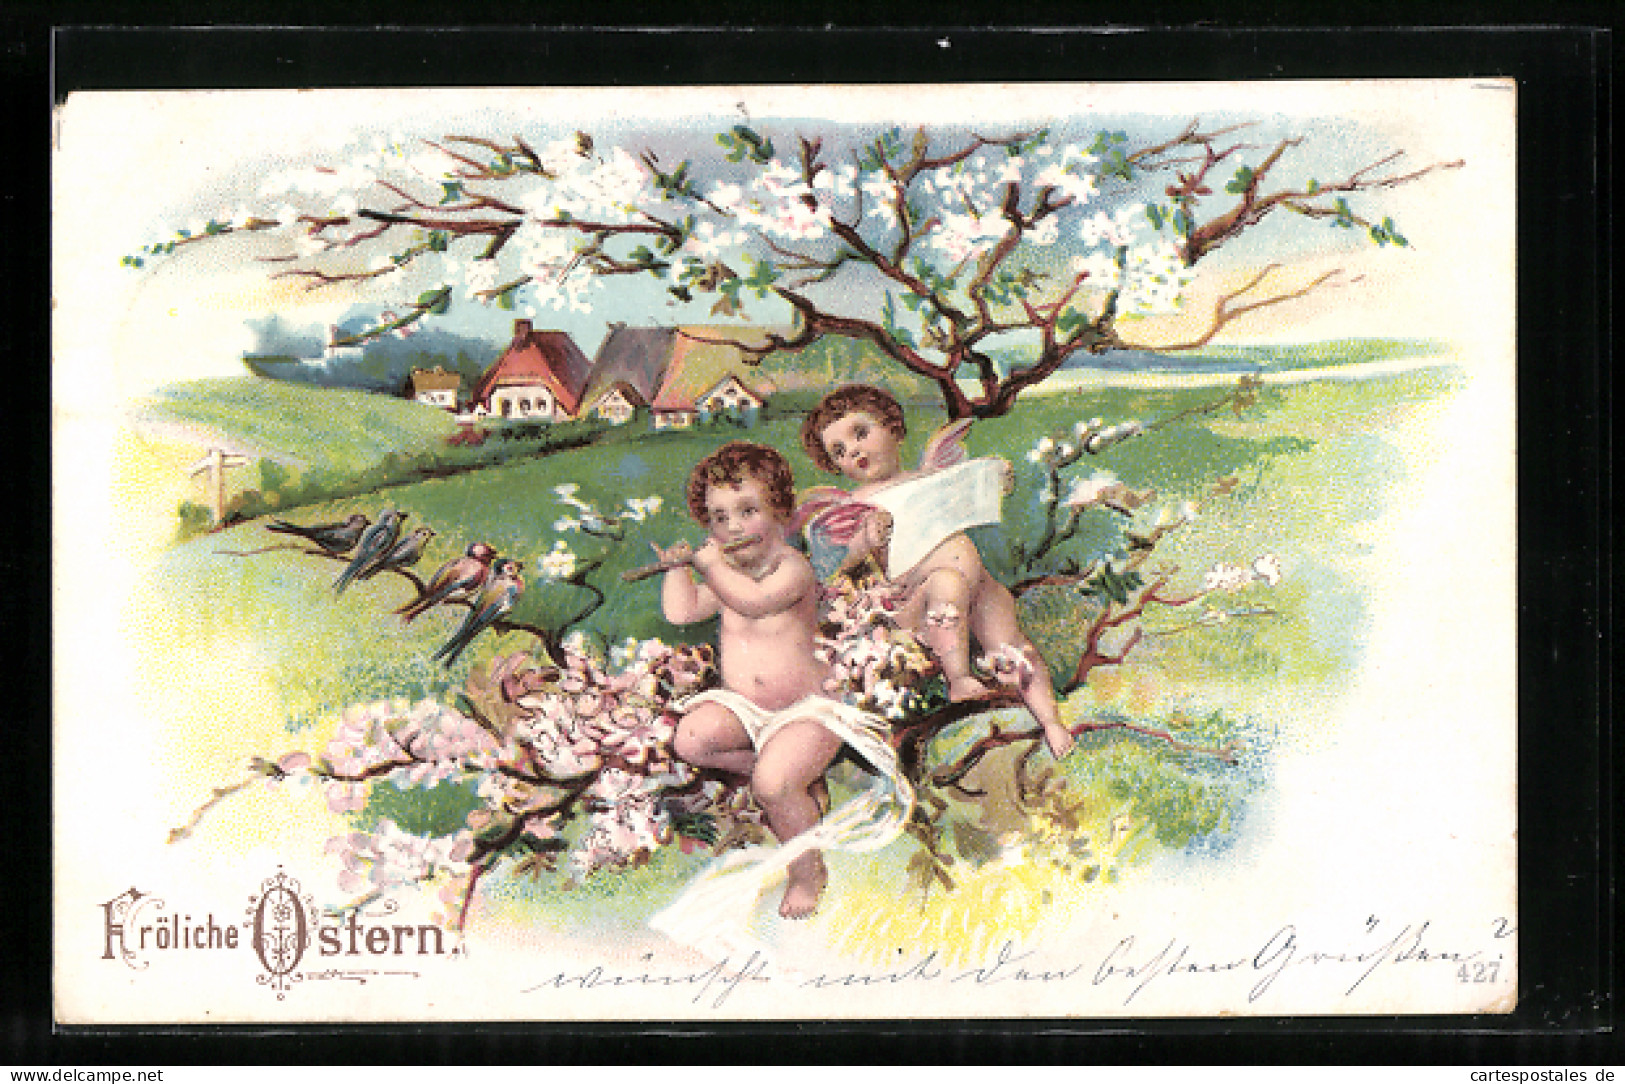 AK Osterengel Beim Musizieren Im Blühenden Kirschbaum  - Anges